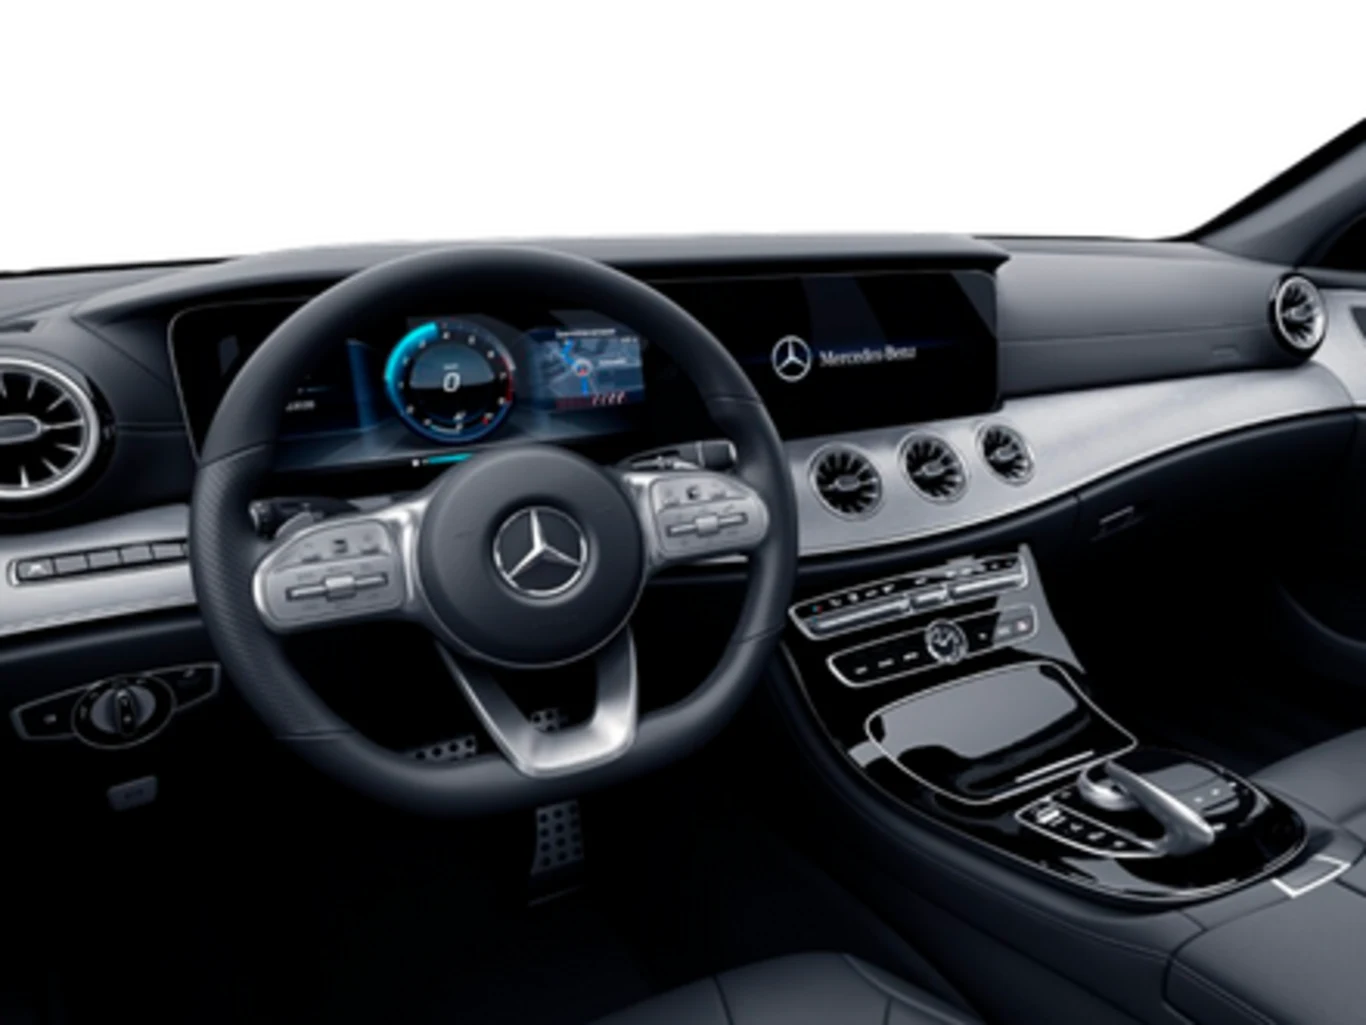 Mercedes-Benz CLS 450 3.0 I6 GASOLINA SPORT 4MATIC 9G-TRONIC 